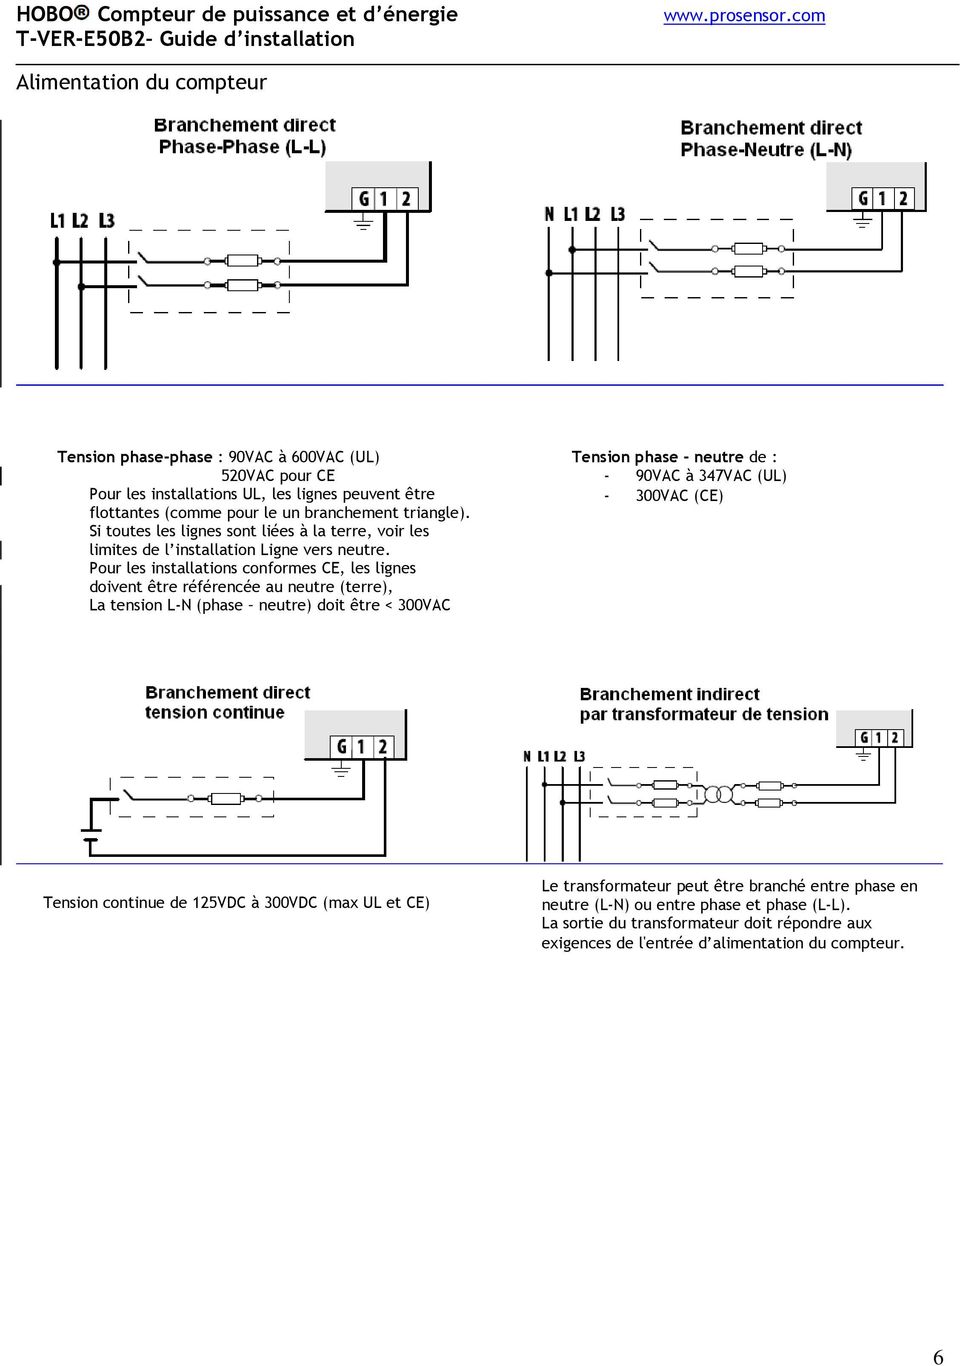 Pour les installations conformes CE, les lignes doivent être référencée au neutre (terre), La tension L-N (phase neutre) doit être < 300VAC Tension phase - neutre de : - 90VAC à